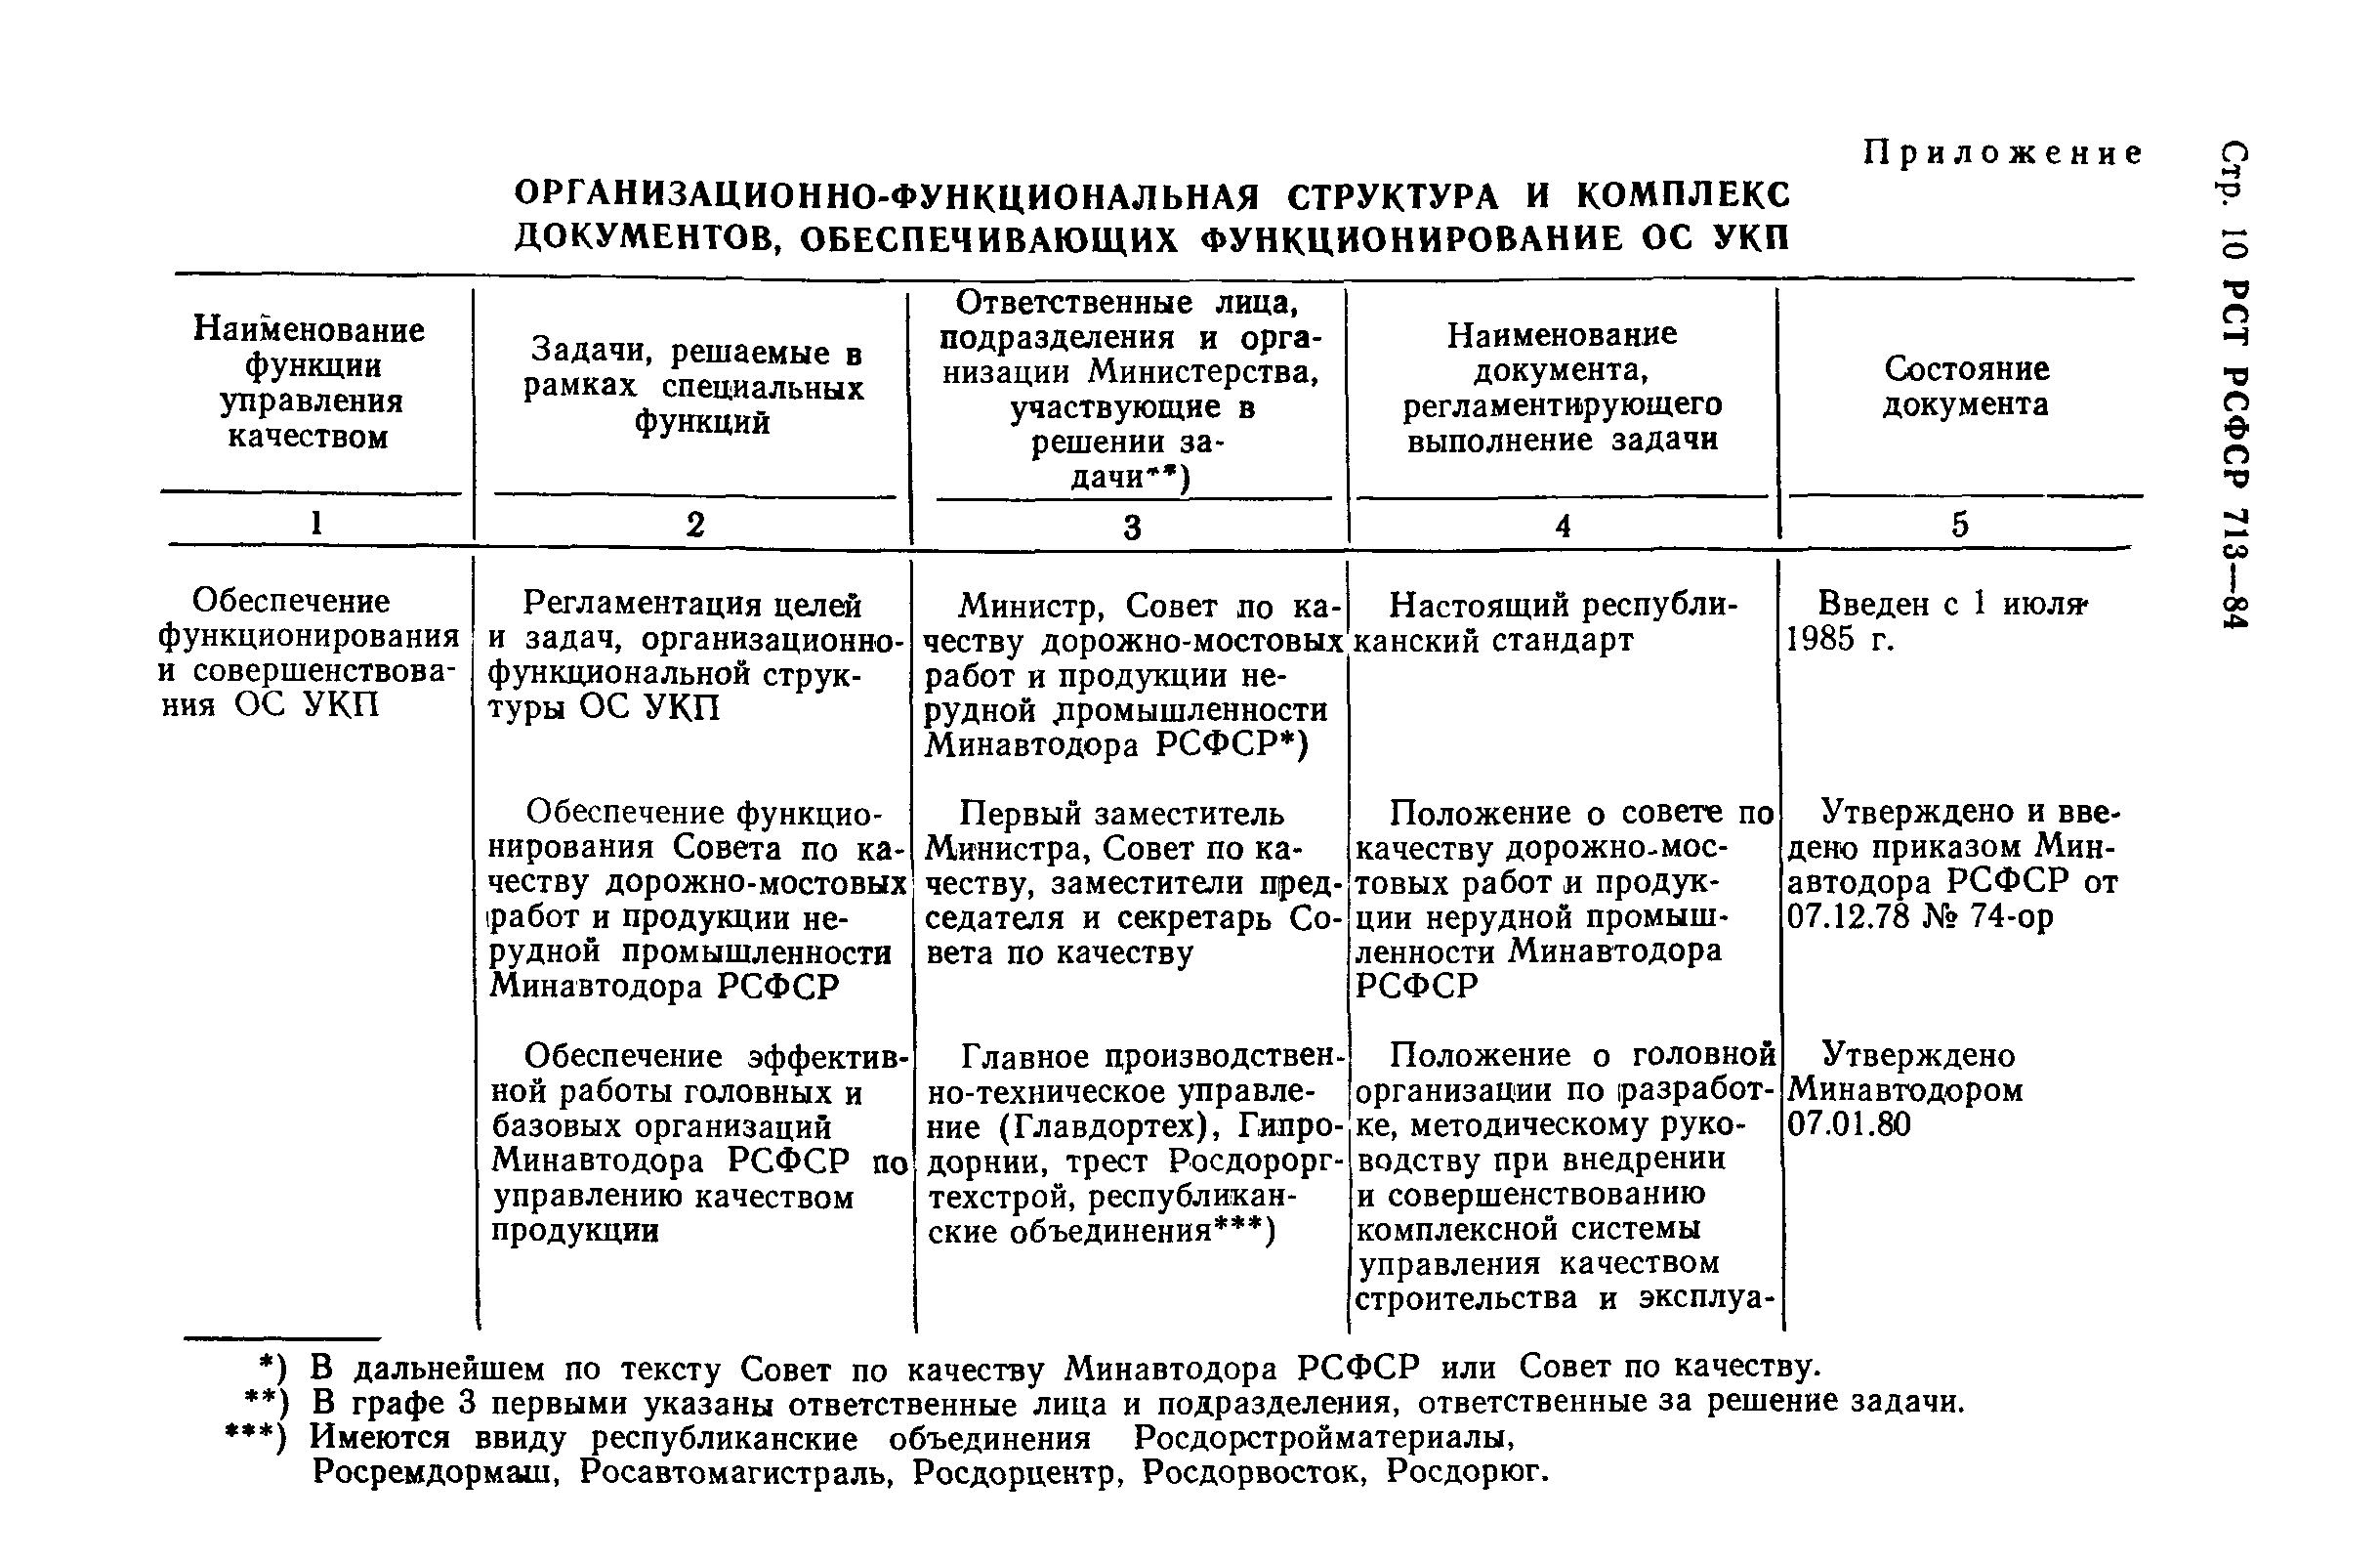 РСТ РСФСР 713-84